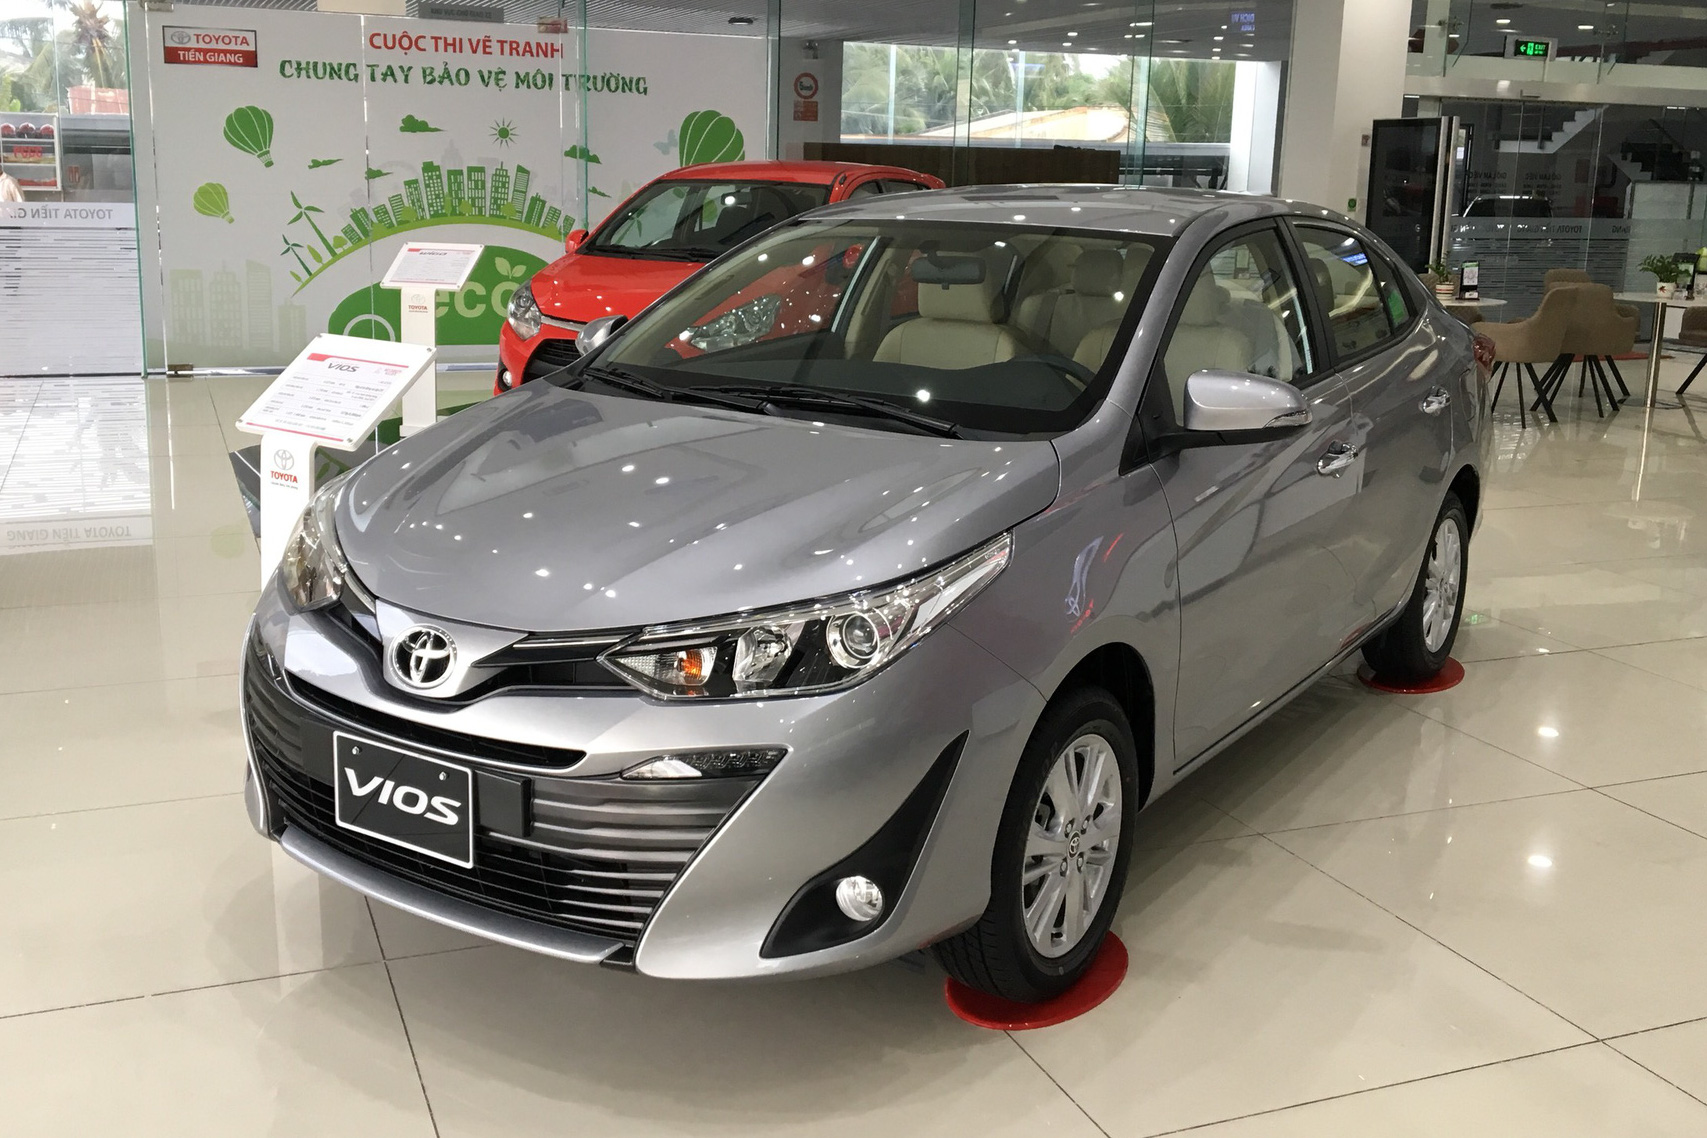 Ồ ạt thay máu sản phẩm, Toyota còn giữ ngôi vua ở những phân khúc nào tại Việt Nam? - Ảnh 4.